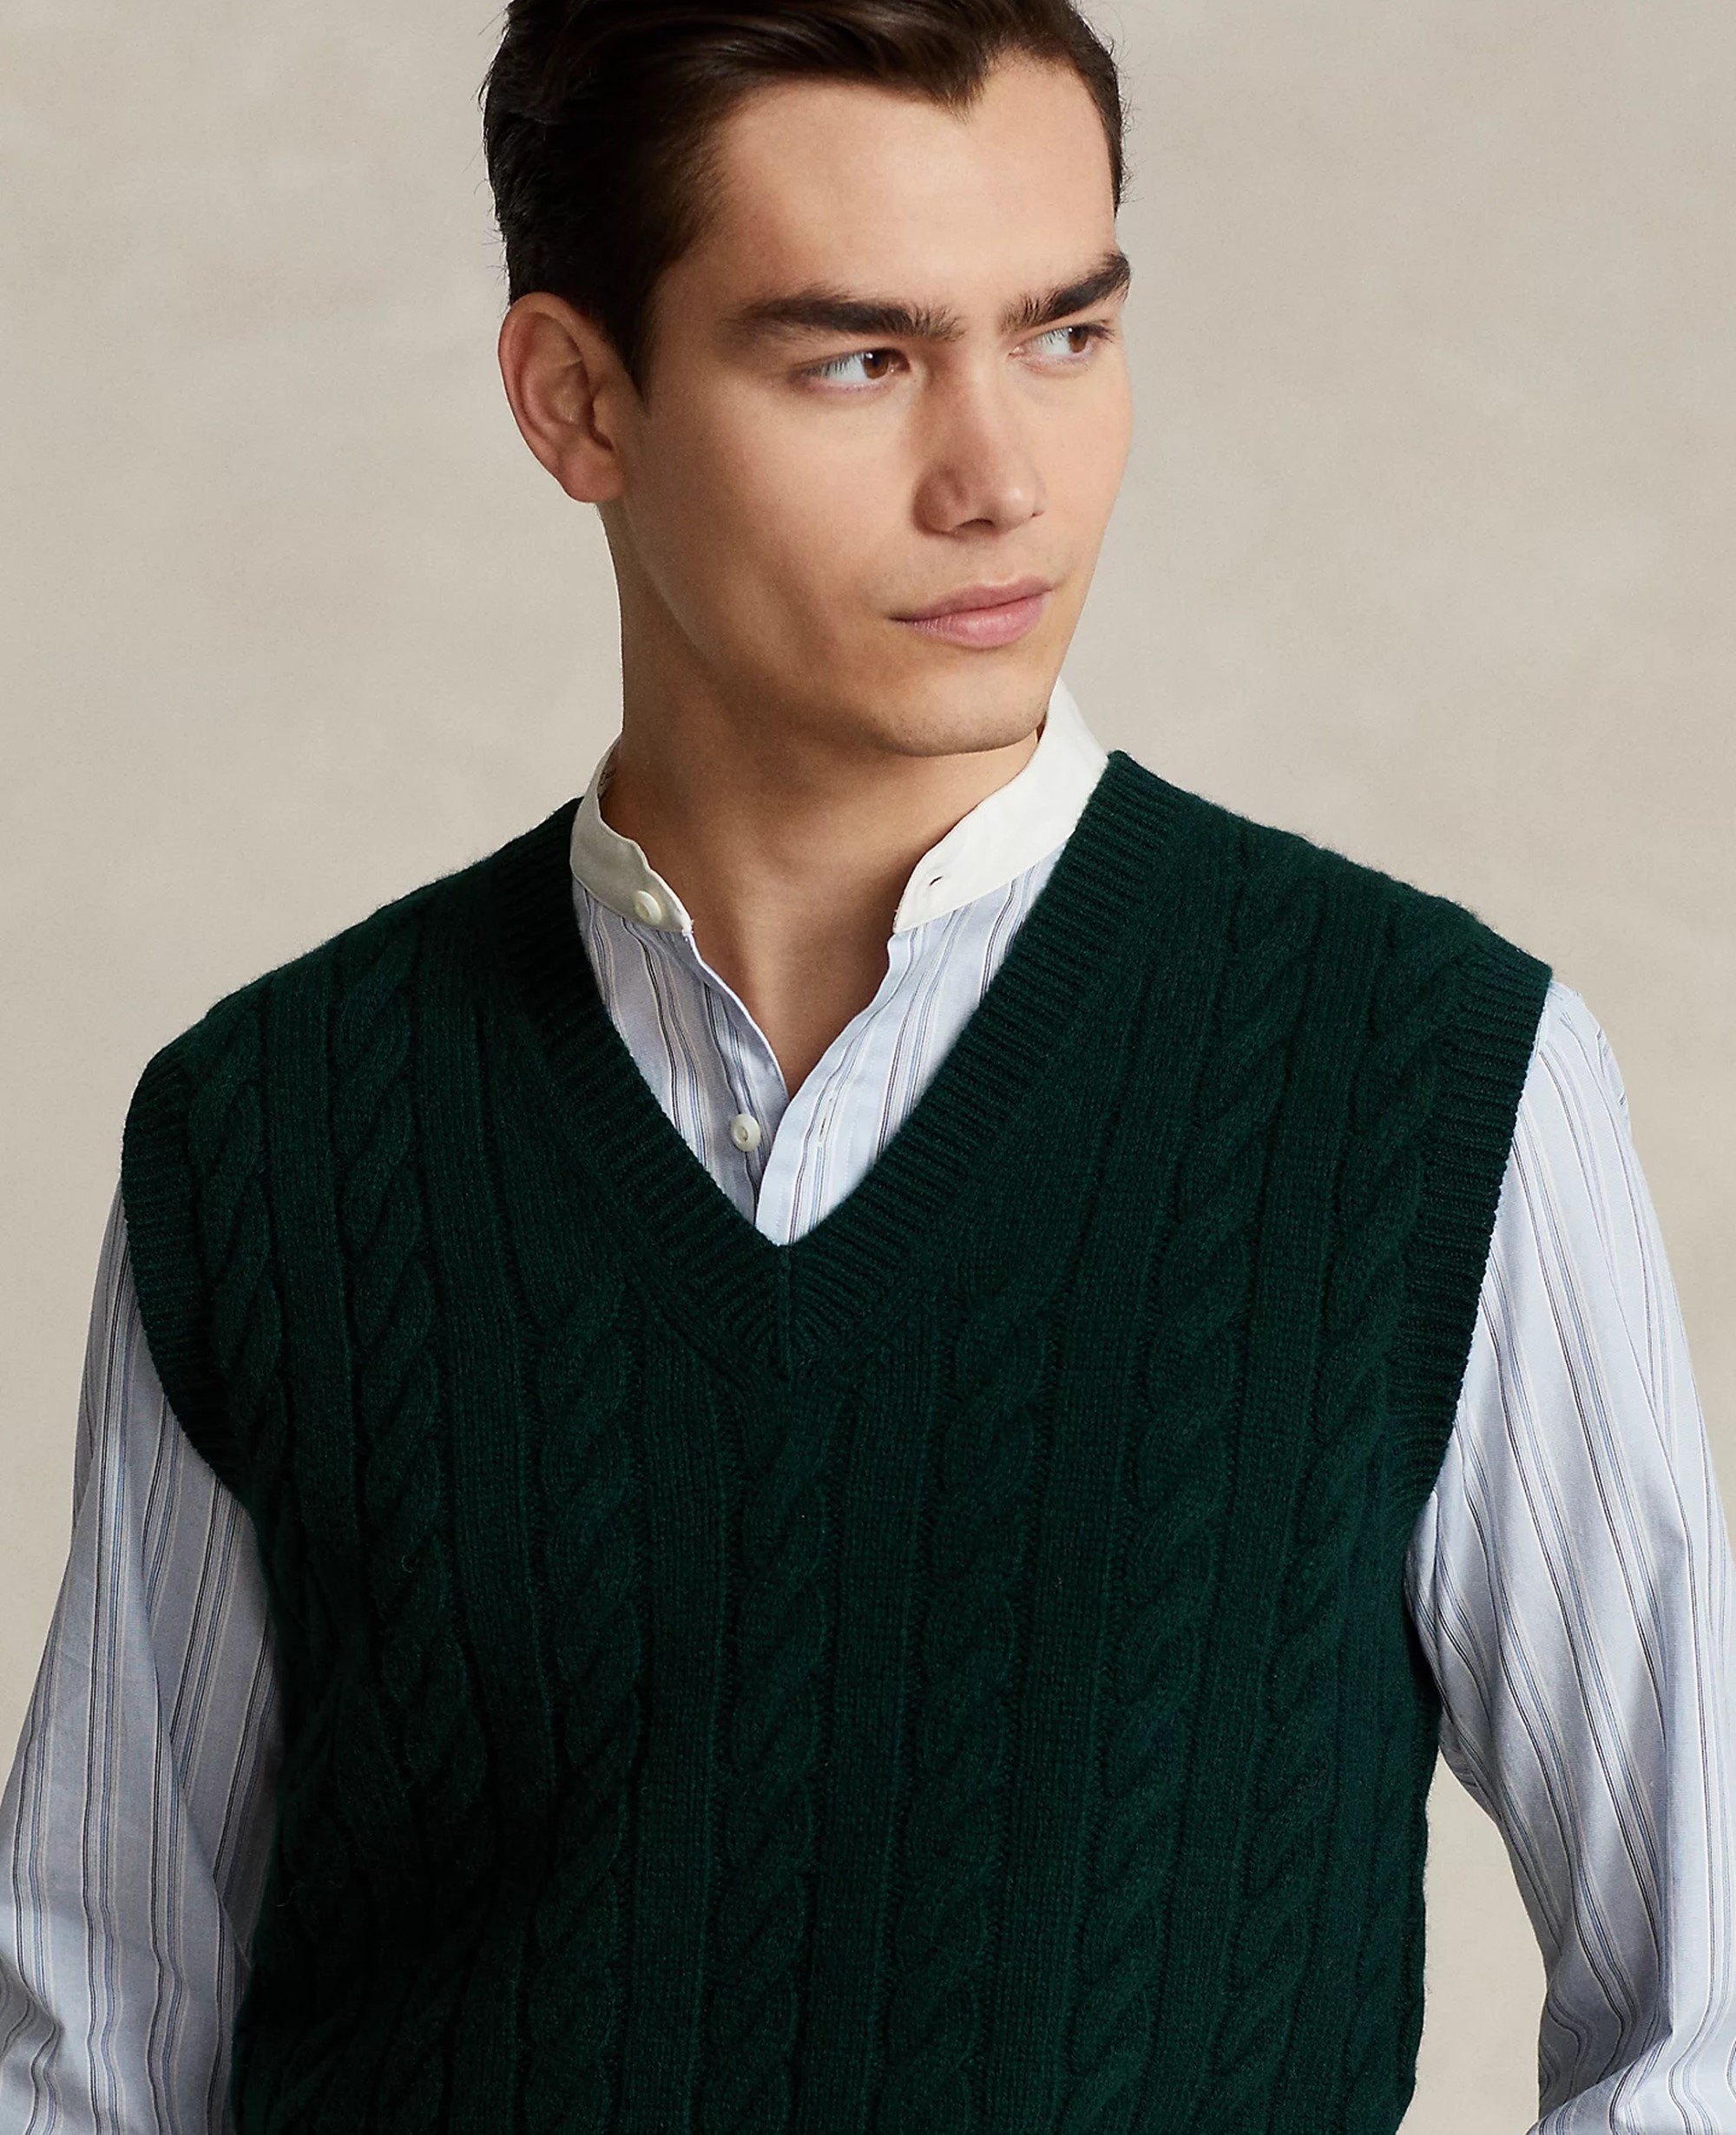 Ralph Lauren sweater vest